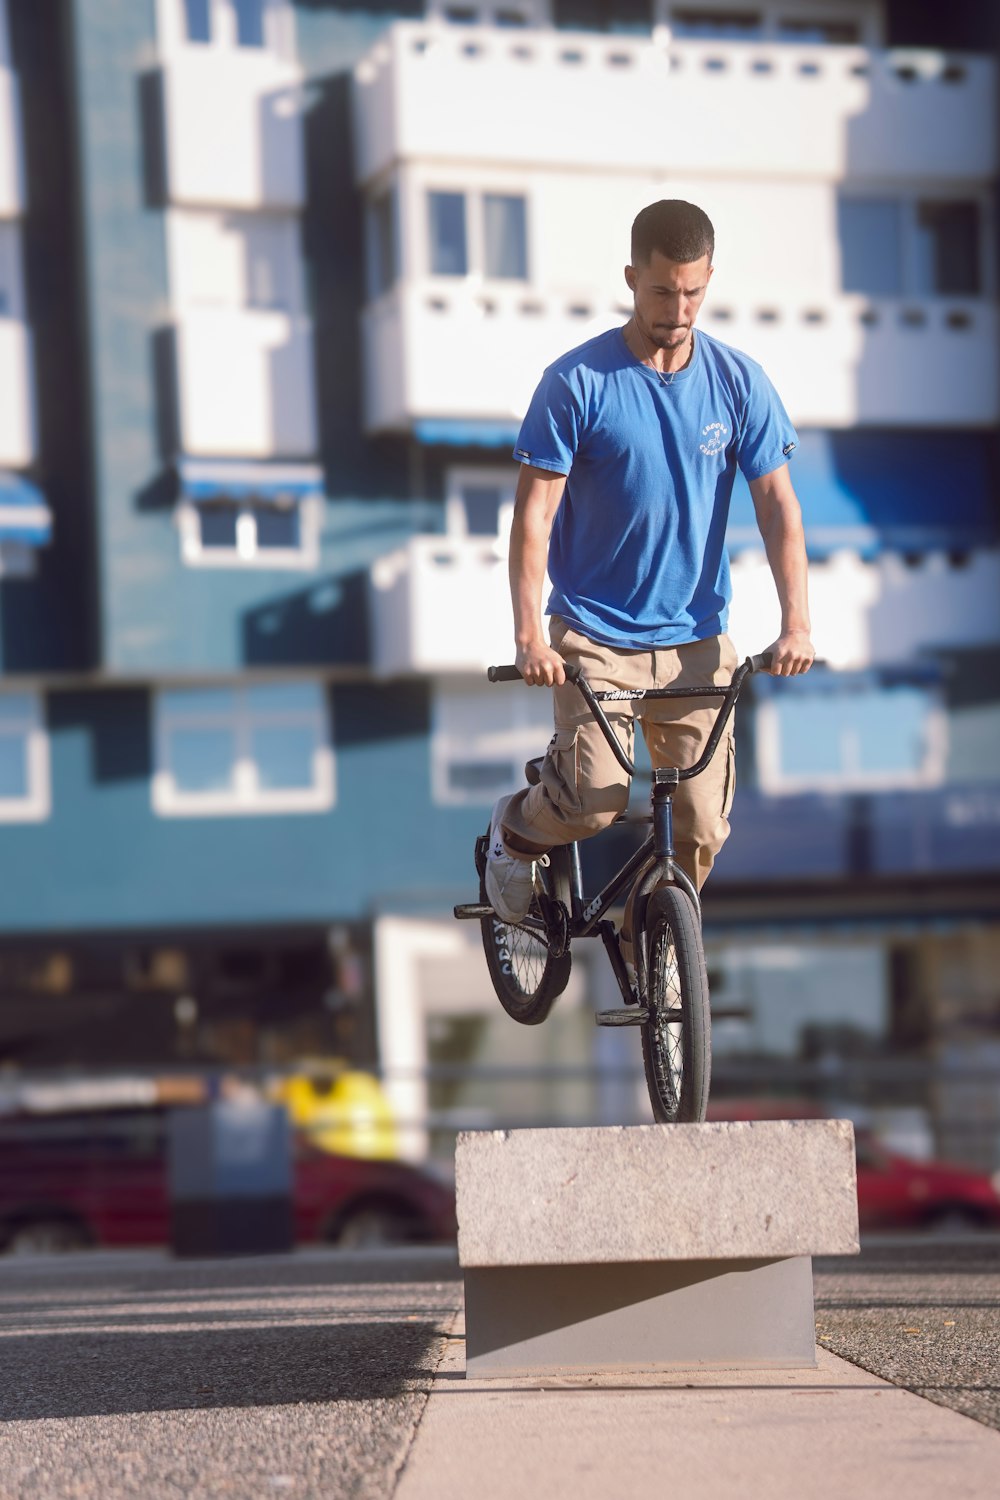 Un hombre montando una bicicleta encima de un bloque de cemento